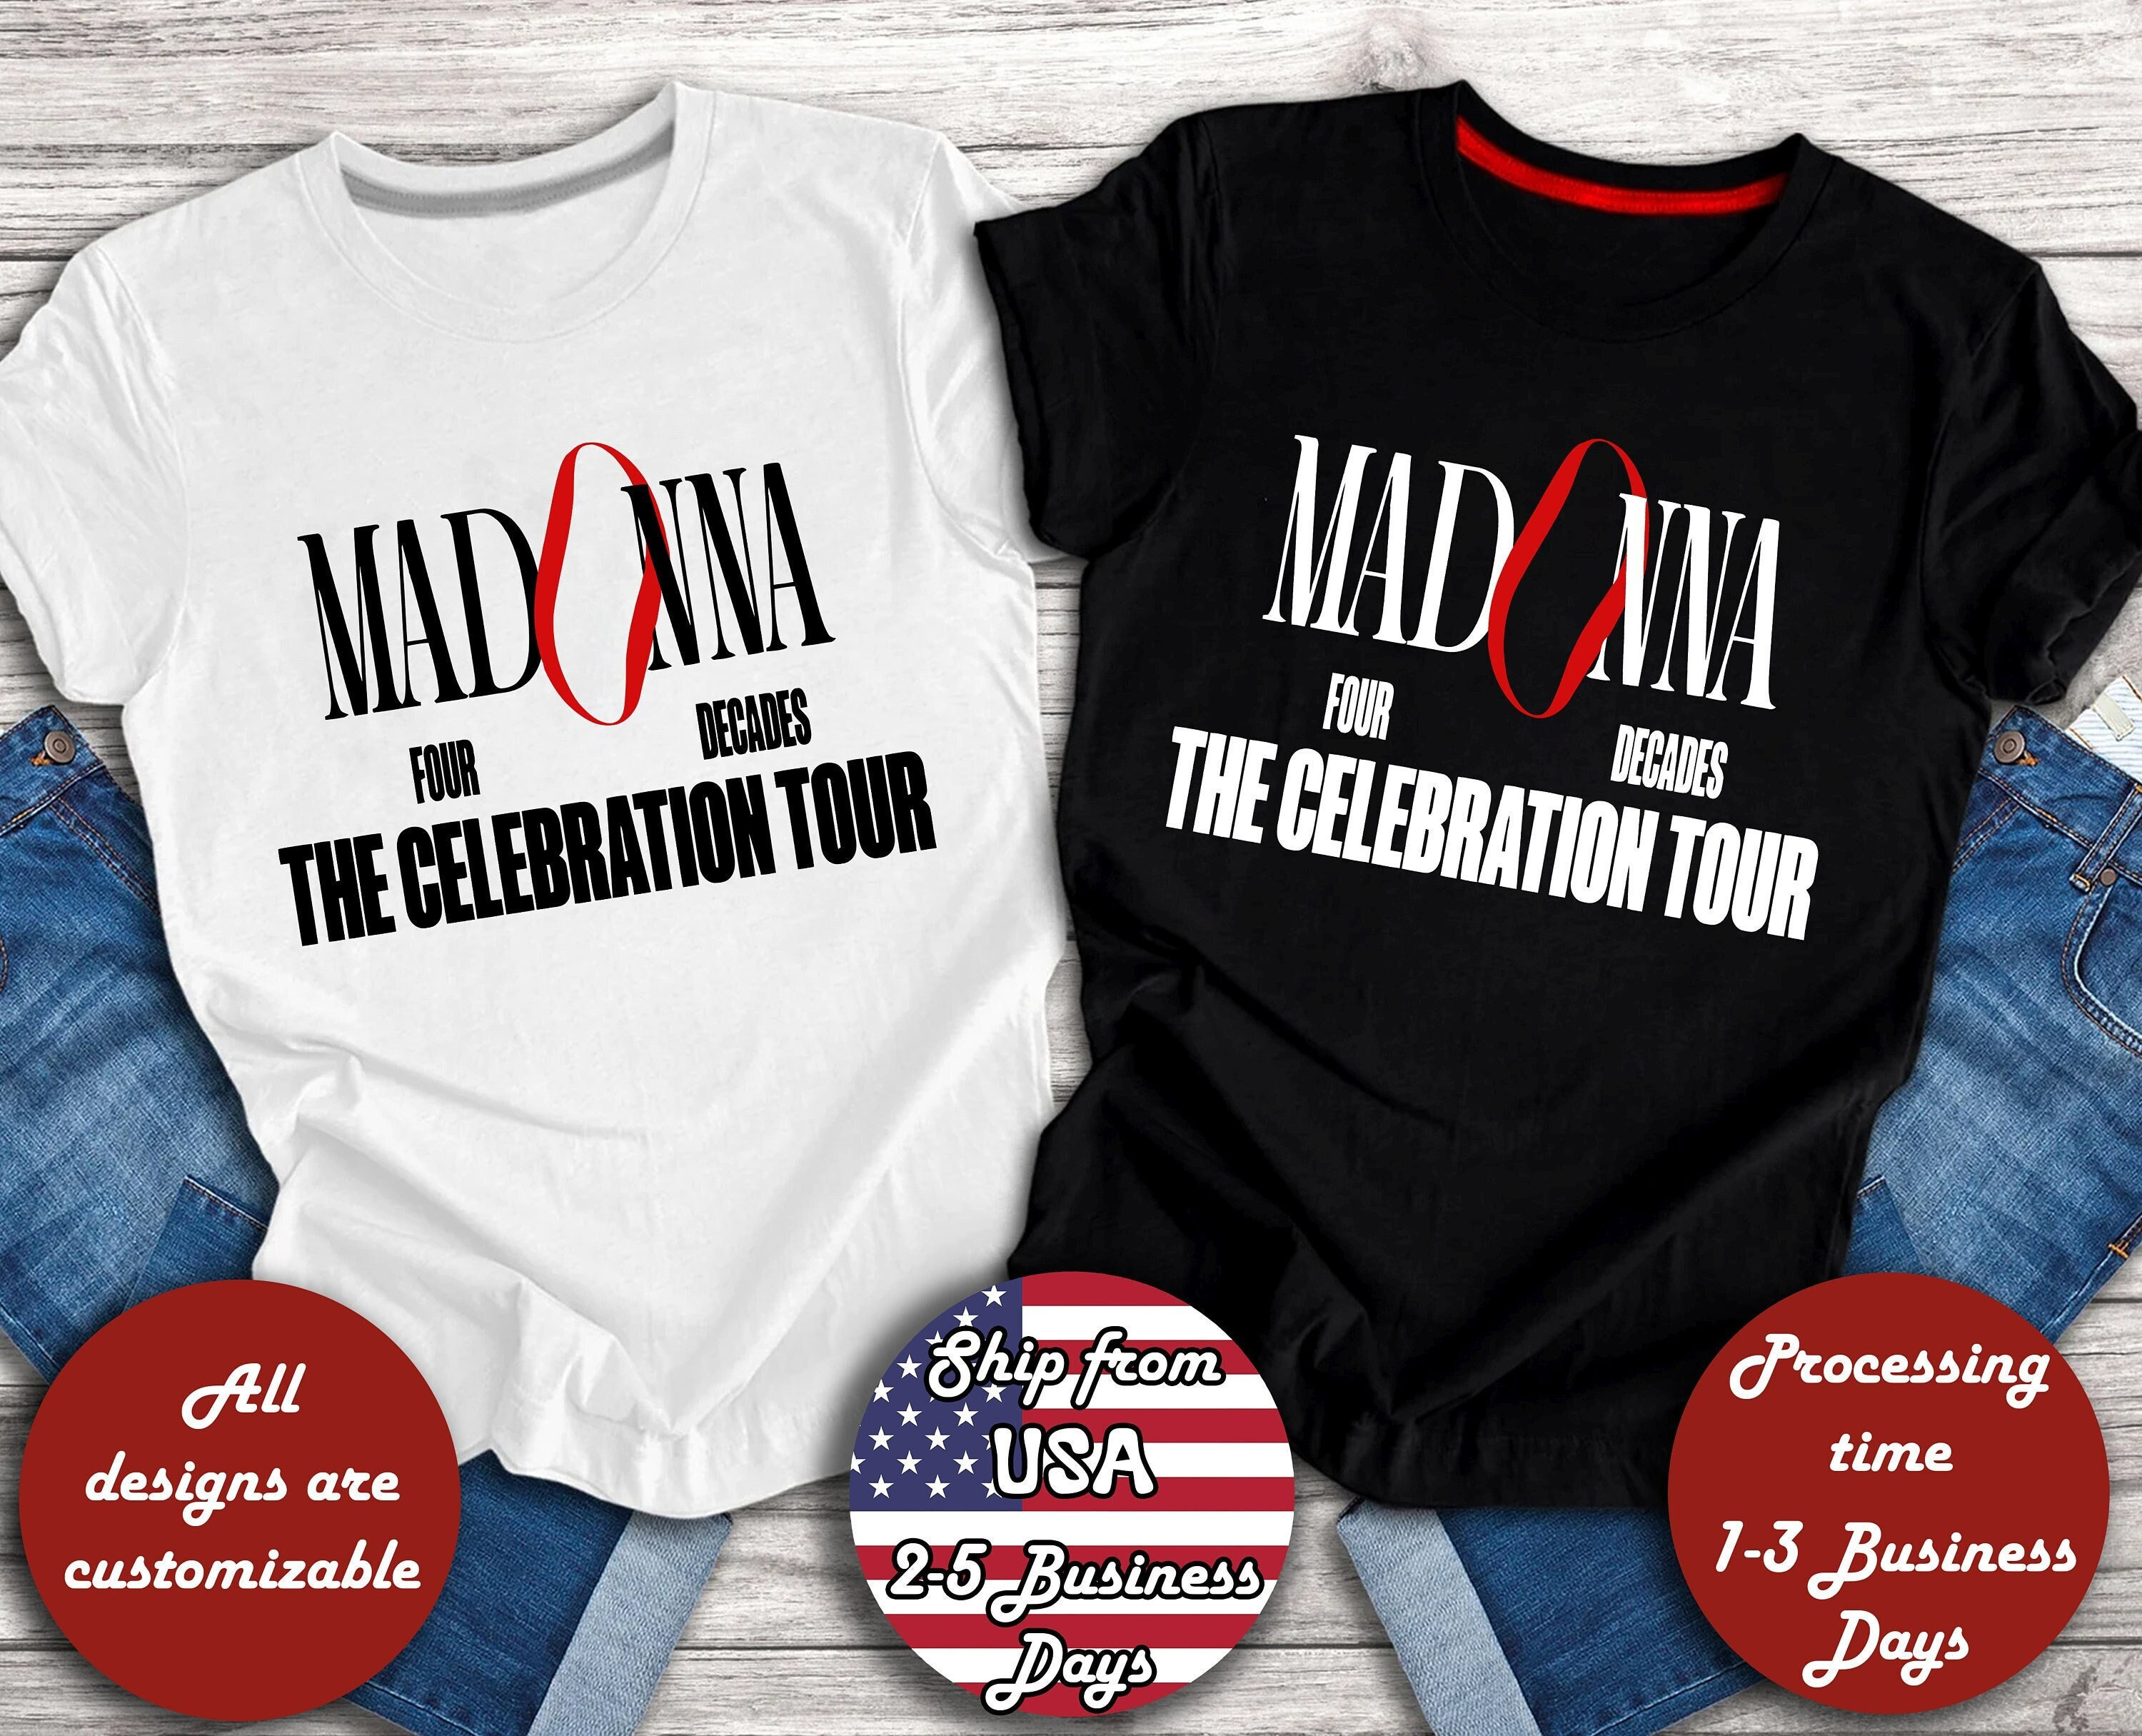 Discover Madonna UK Tour T-shirt, The Celebration Tour 2023 Shirt, Concert Tour Shirt